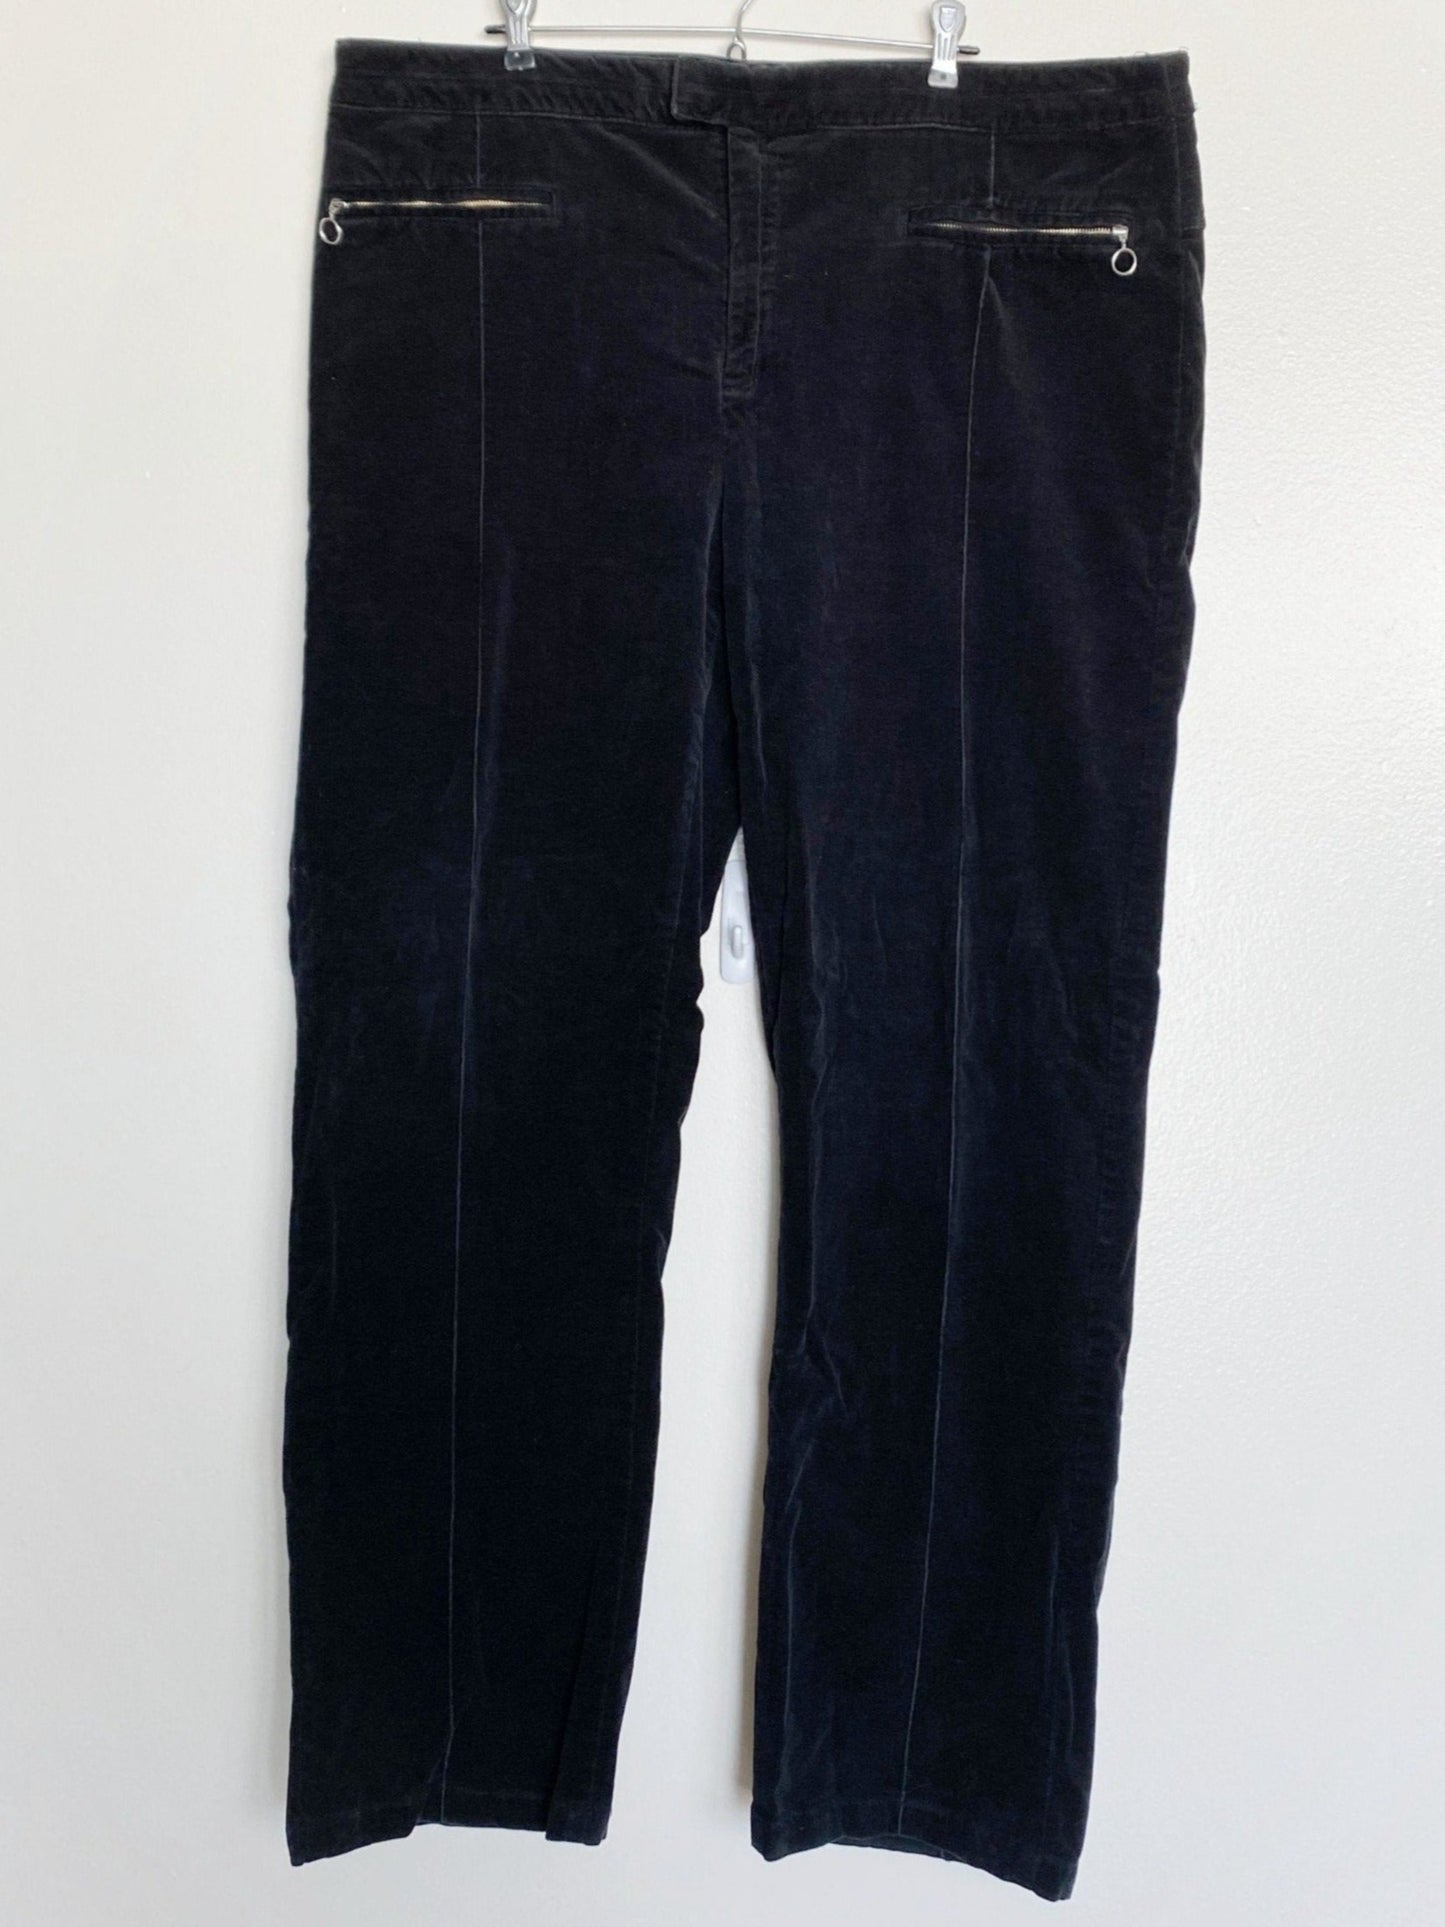 Black Velvet Pants (Size 26)